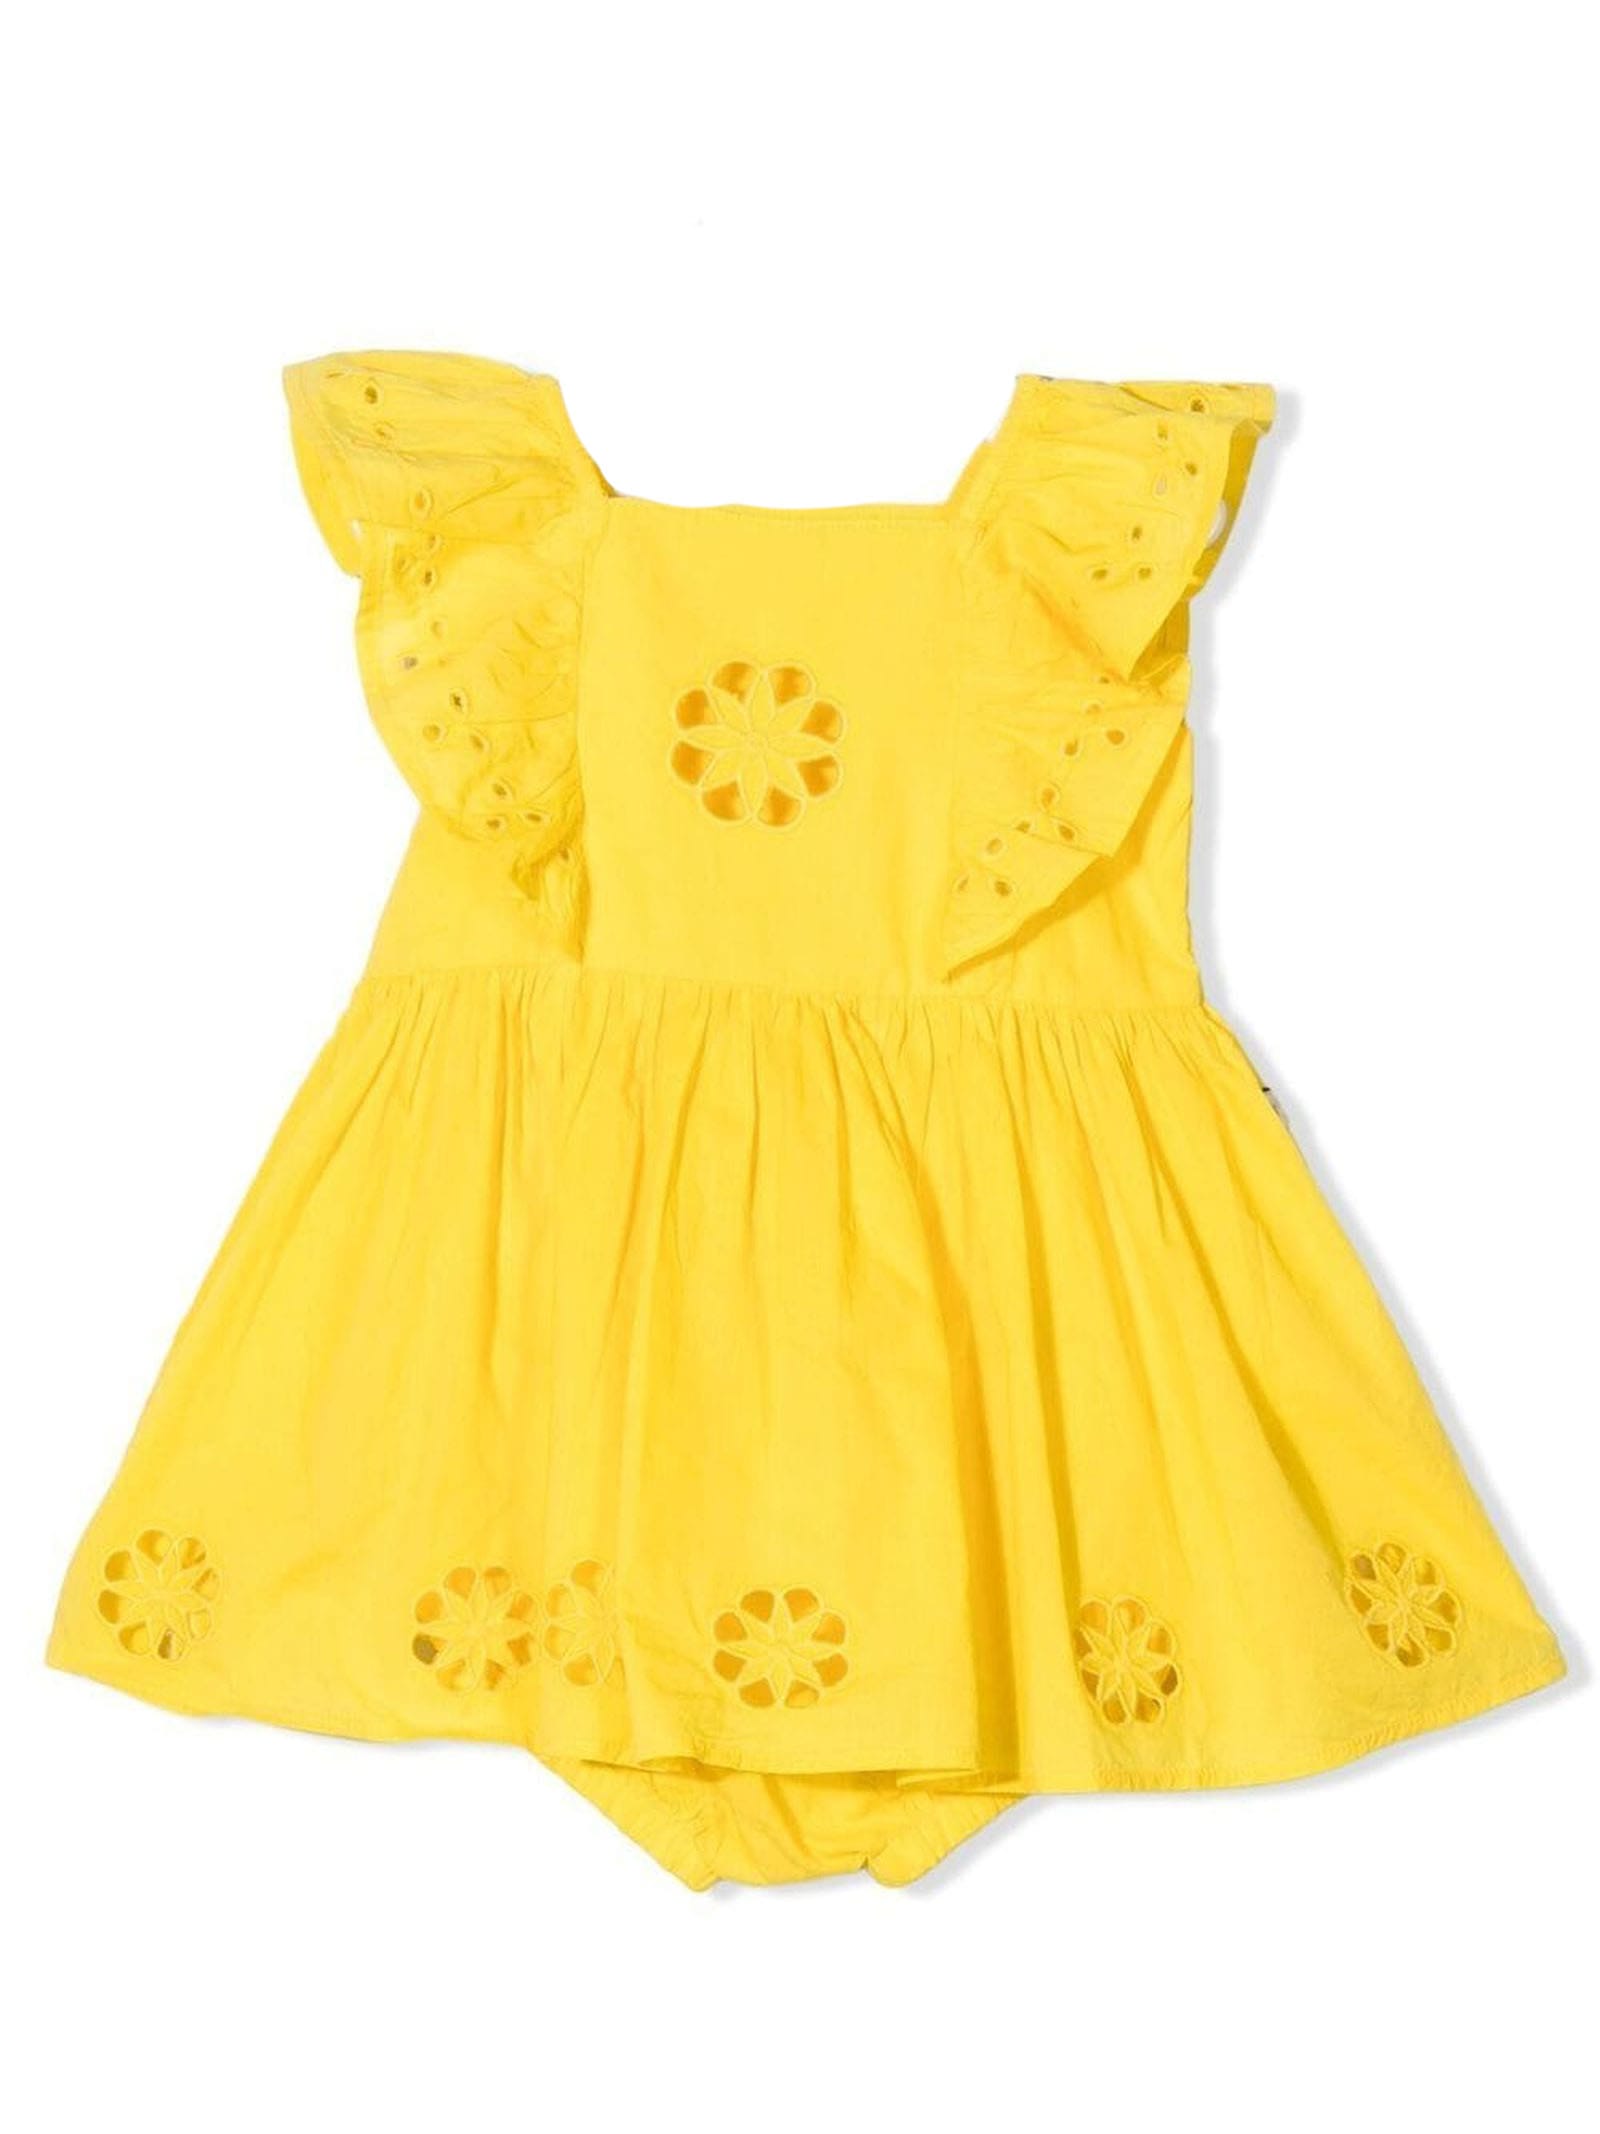 Stella McCartney Kids Yellow Cotton Dress